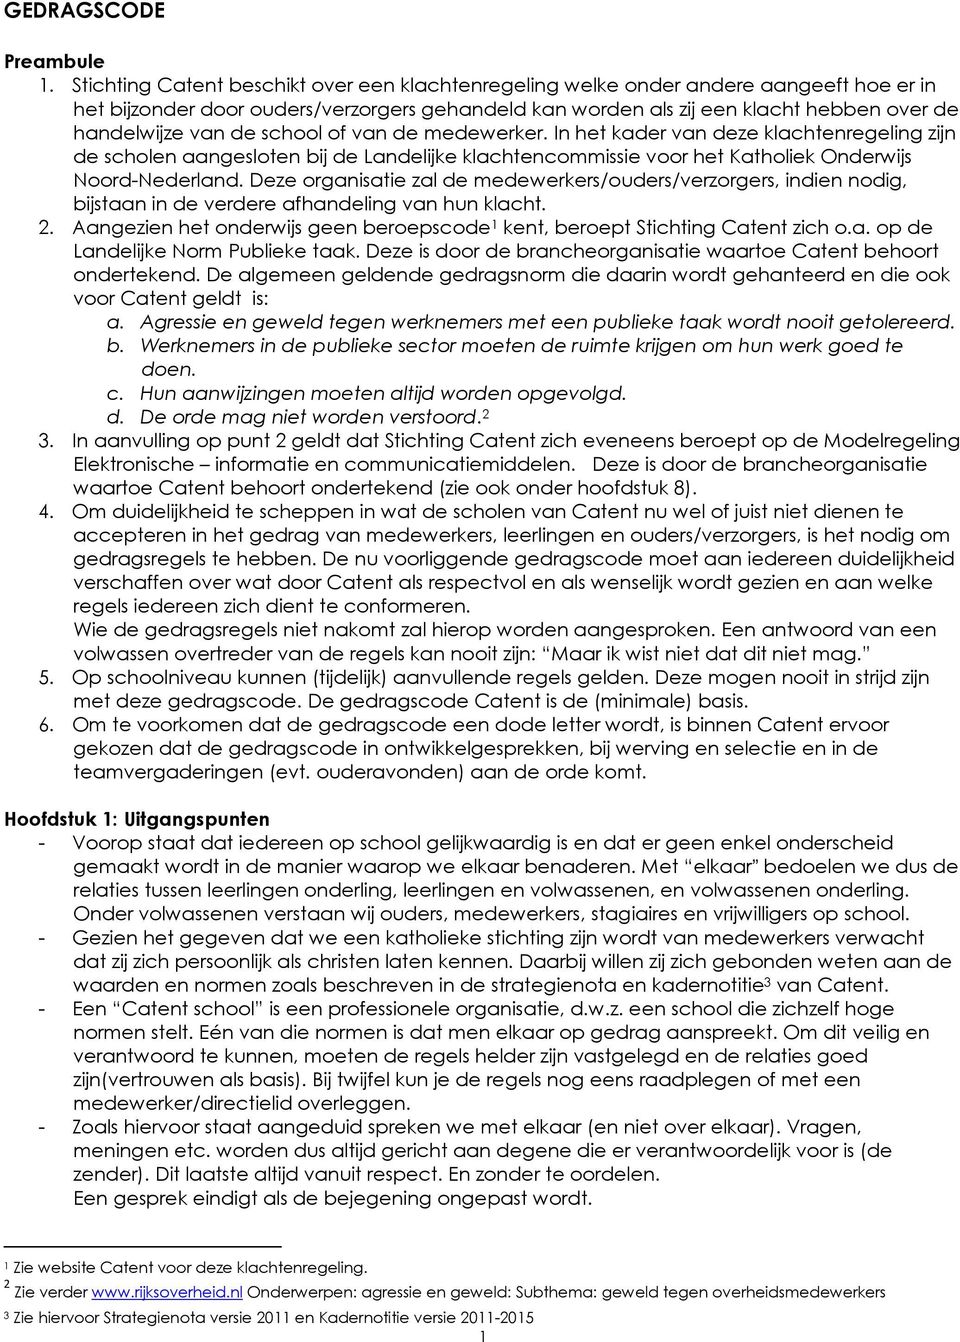 de school of van de medewerker. In het kader van deze klachtenregeling zijn de scholen aangesloten bij de Landelijke klachtencommissie voor het Katholiek Onderwijs Noord-Nederland.